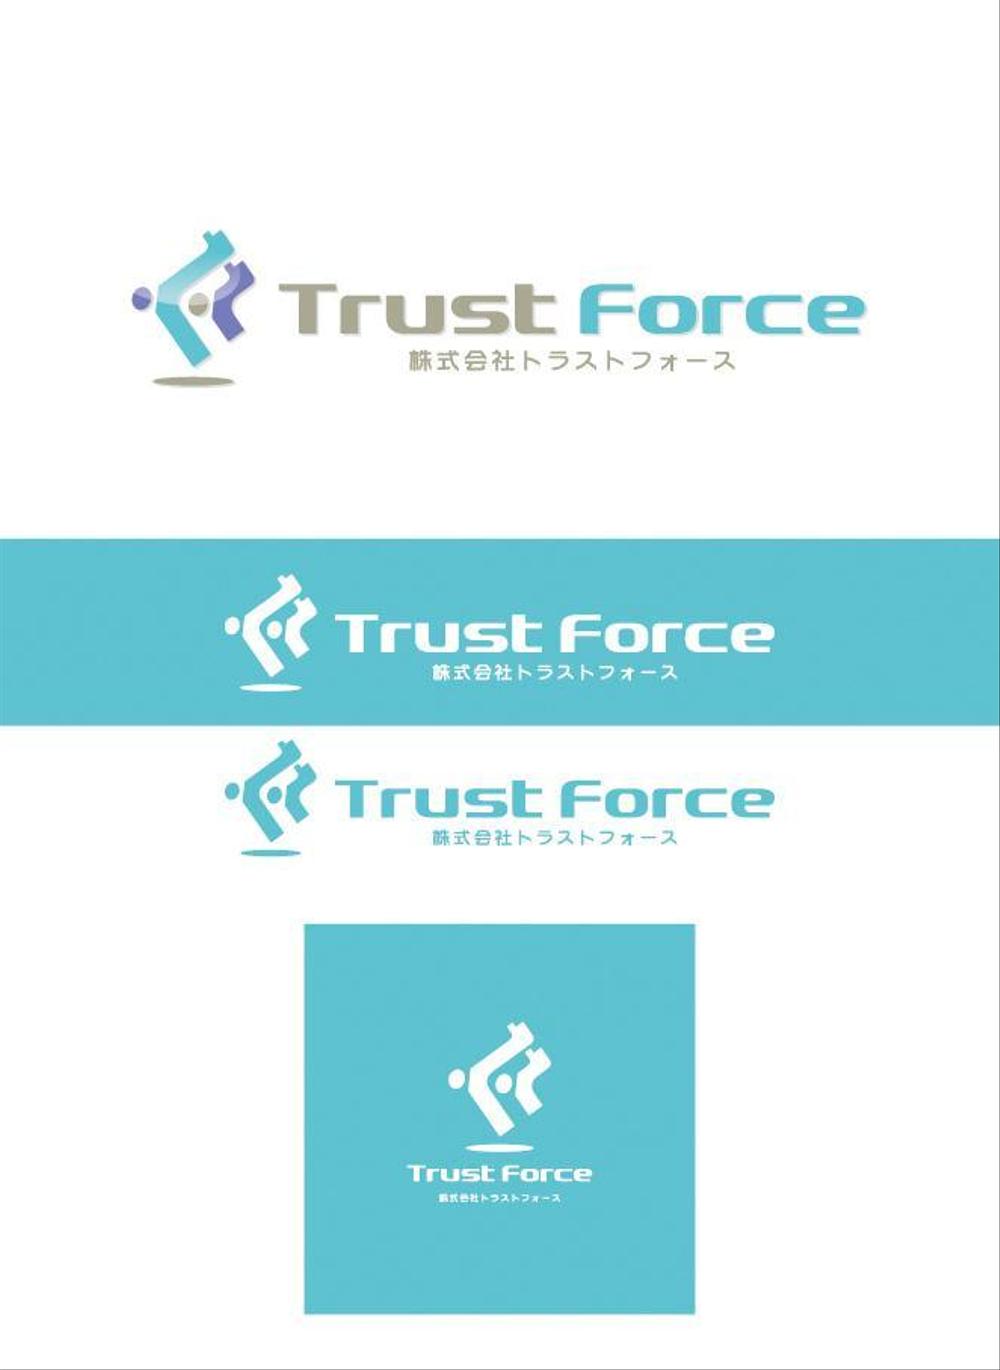 ソフトウェア開発会社の会社ロゴ